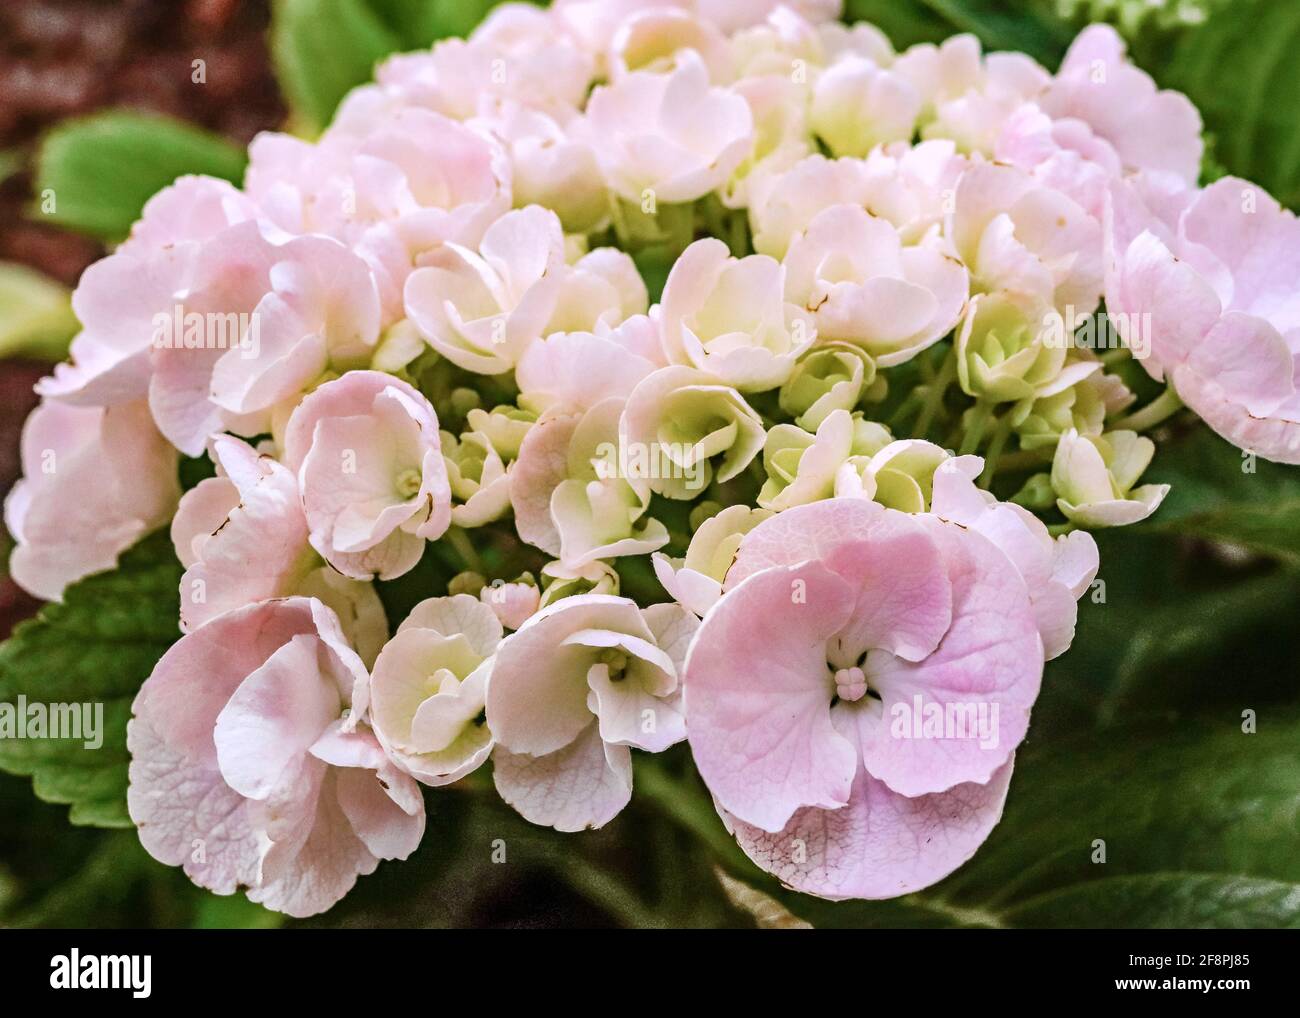 Idrangea rosa chiaro che fiorisce nel giardino Foto Stock